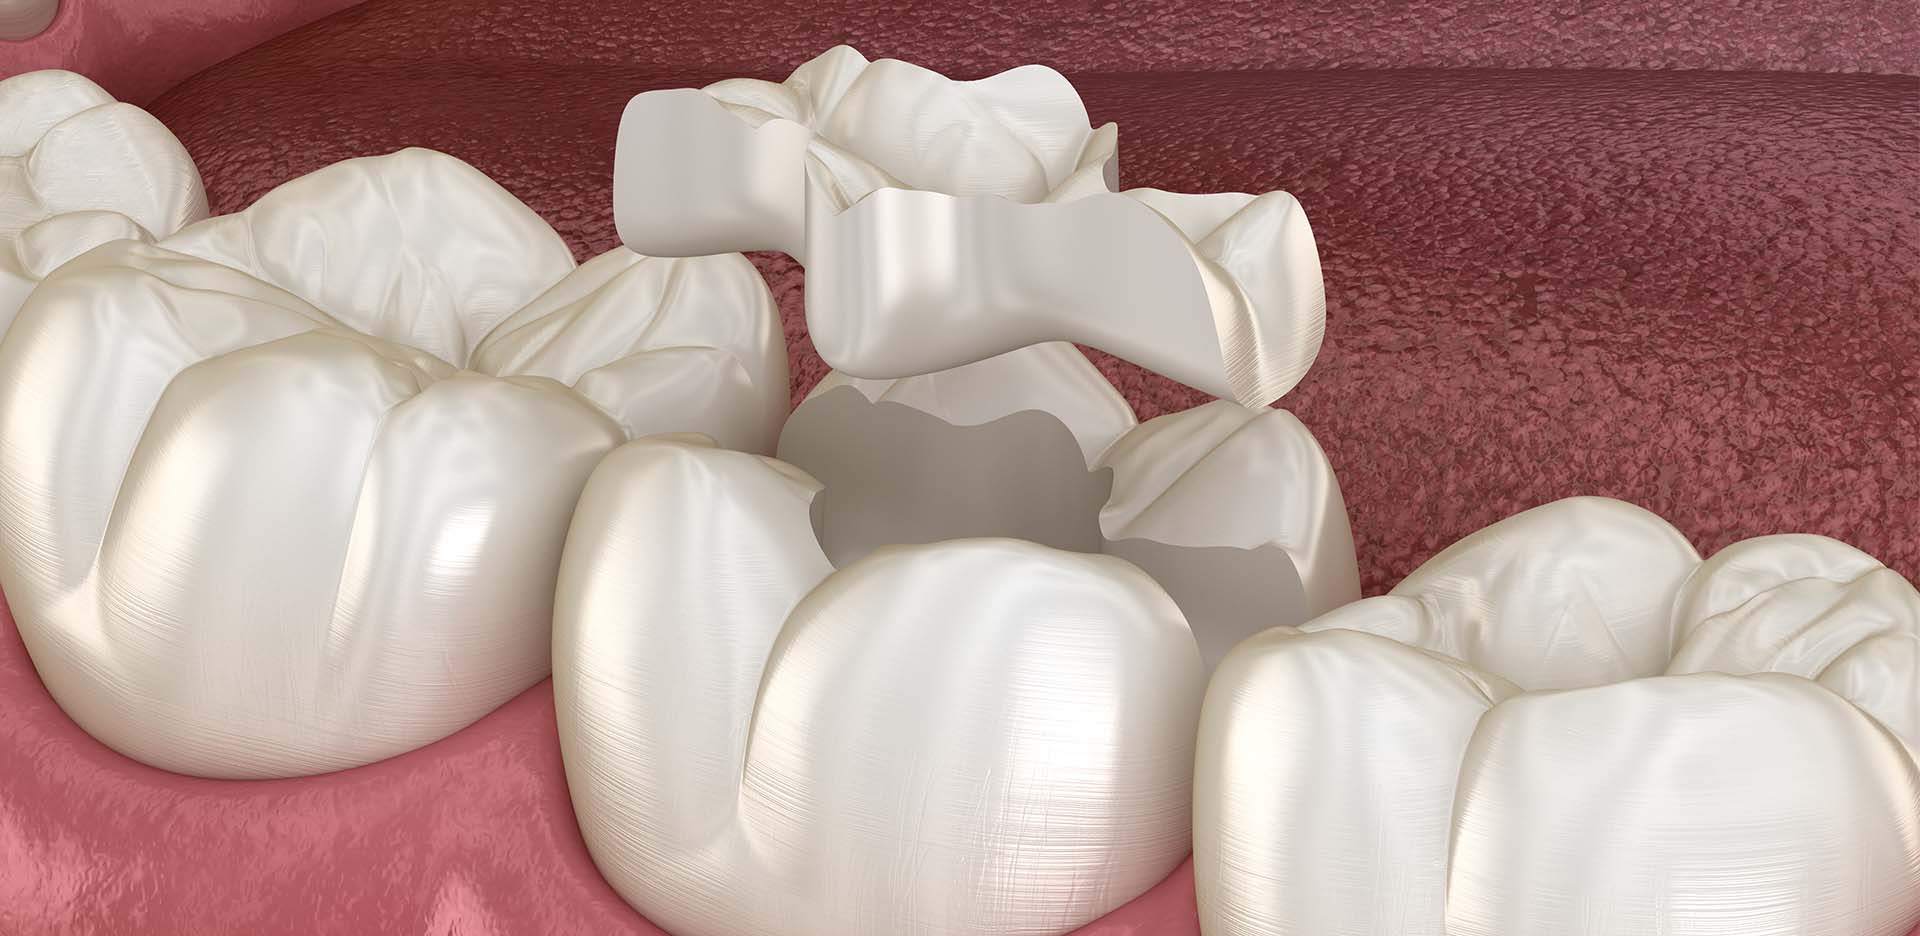 Detailaufnahme von Inlays nach einer Füllungstherapie in der Zahnarztpraxis Emma Klein in Rastede